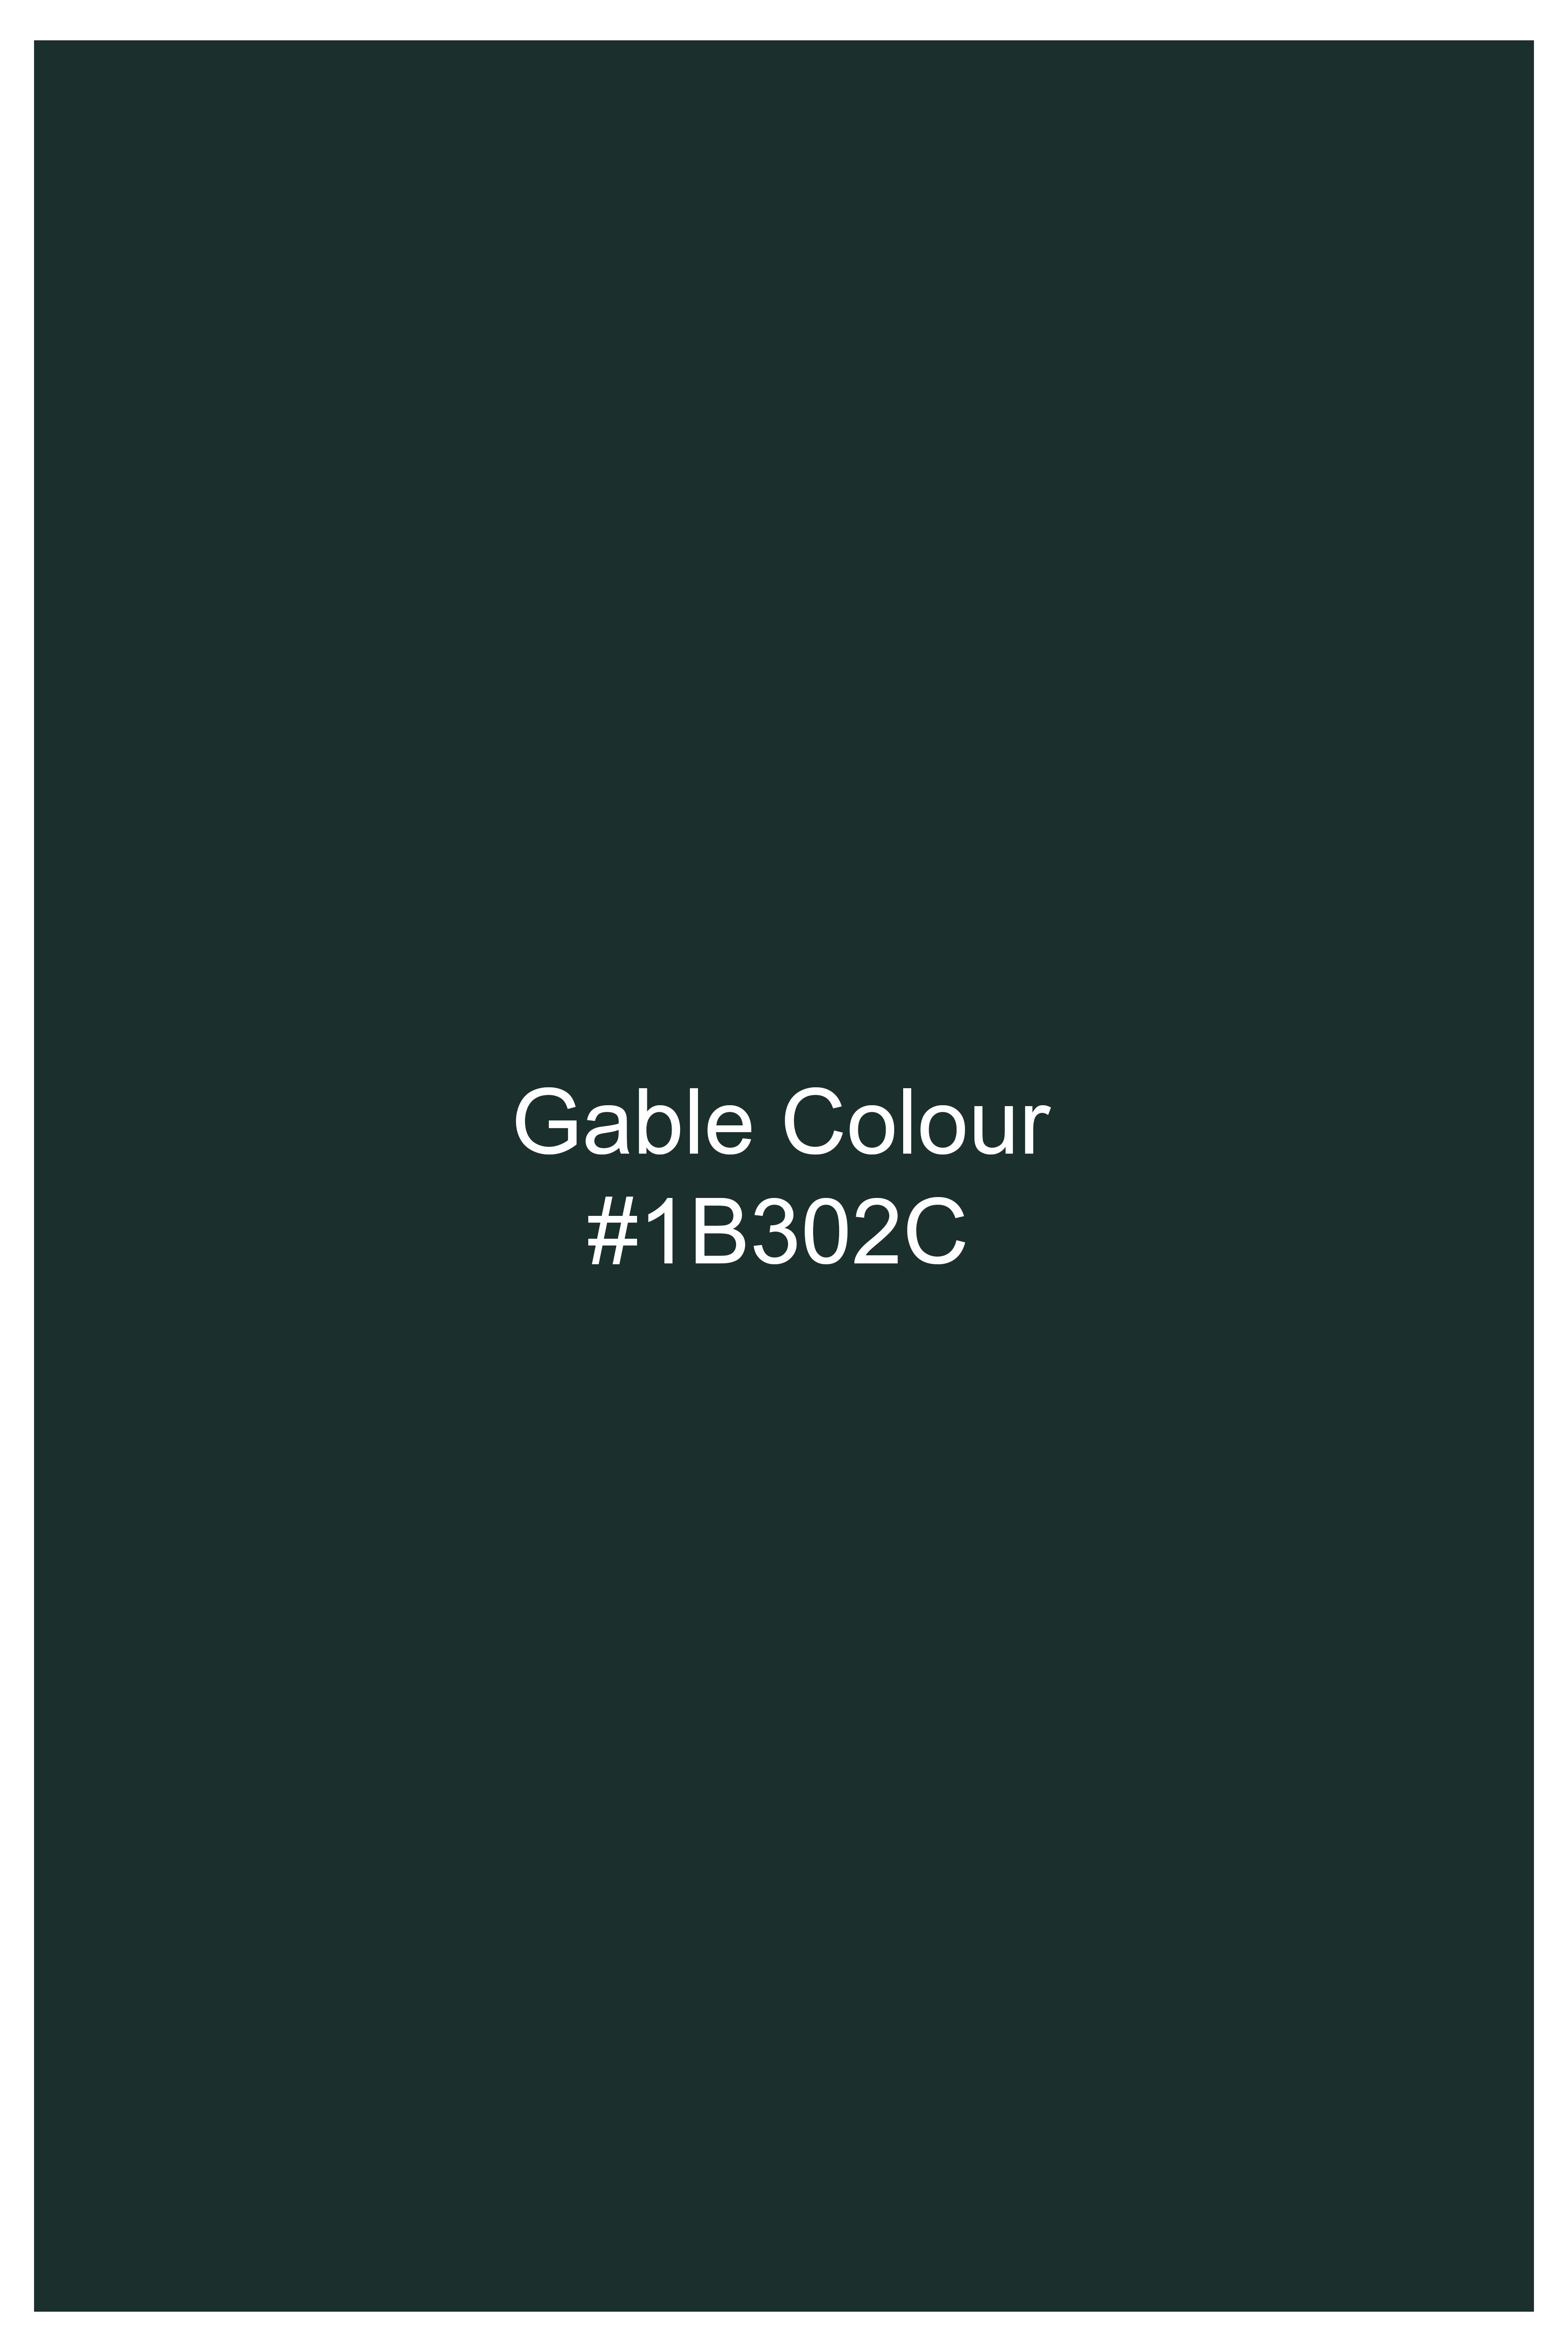 Gable Green Wool Rich Pant T3051-28, T3051-30, T3051-32, T3051-34, T3051-36, T3051-38, T3051-40, T3051-42, T3051-44